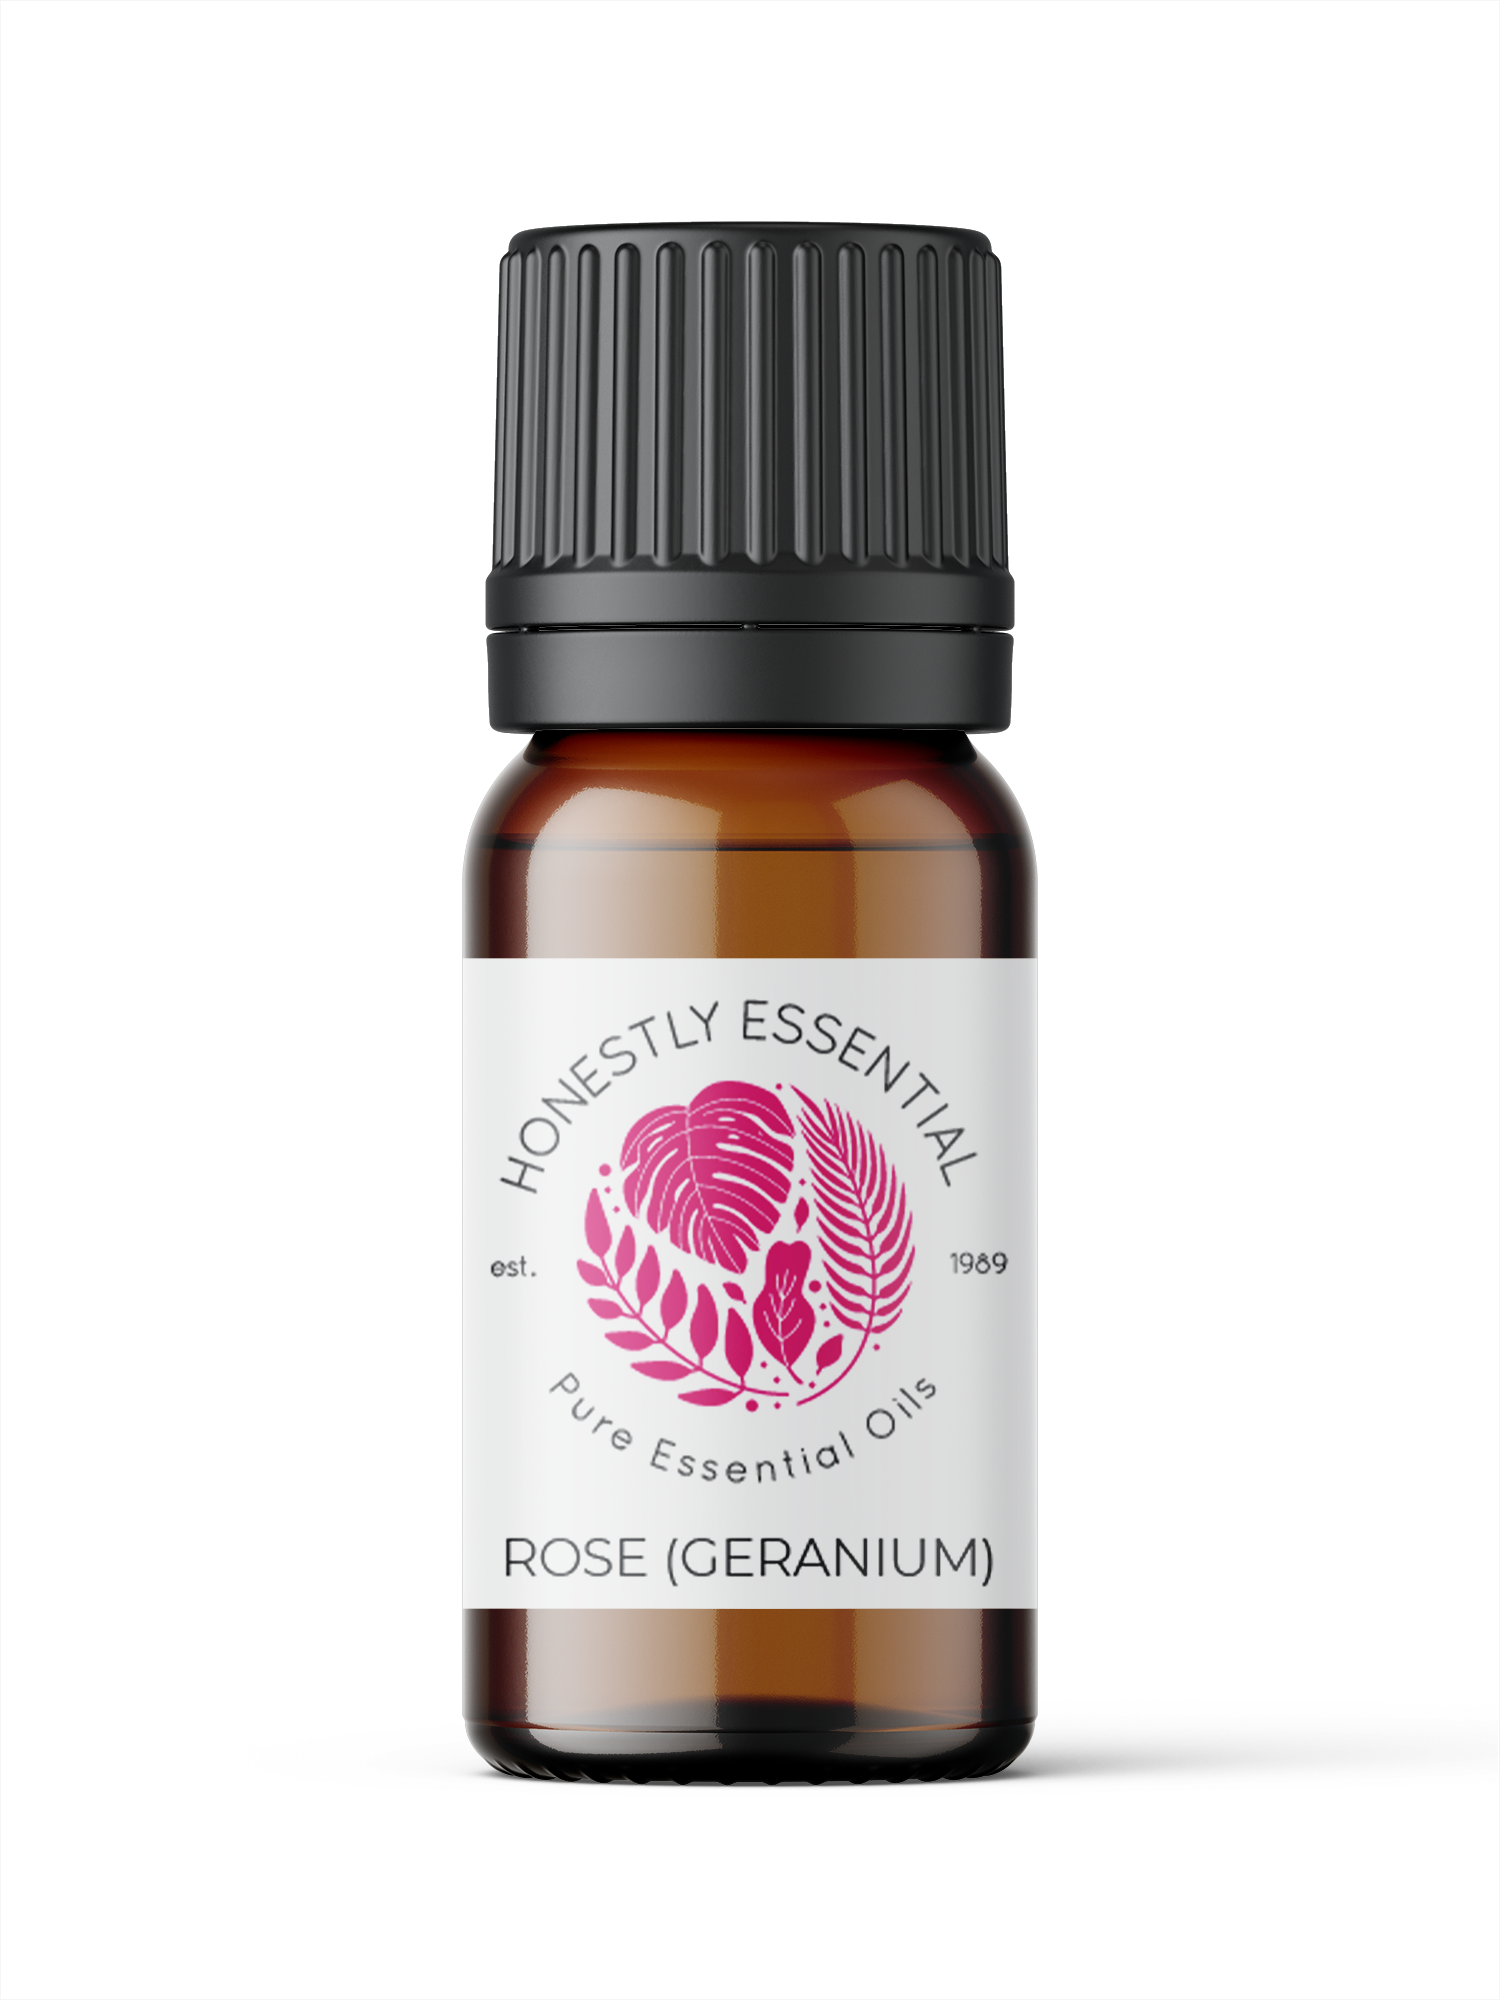 Rose Geranium Essential Oil - Essential Oils | Honestly Essential Oils anxiety, bruising, child, depression, essential, flower, flower essential oil, flowers, geranium, kid, kid safe, oil, or